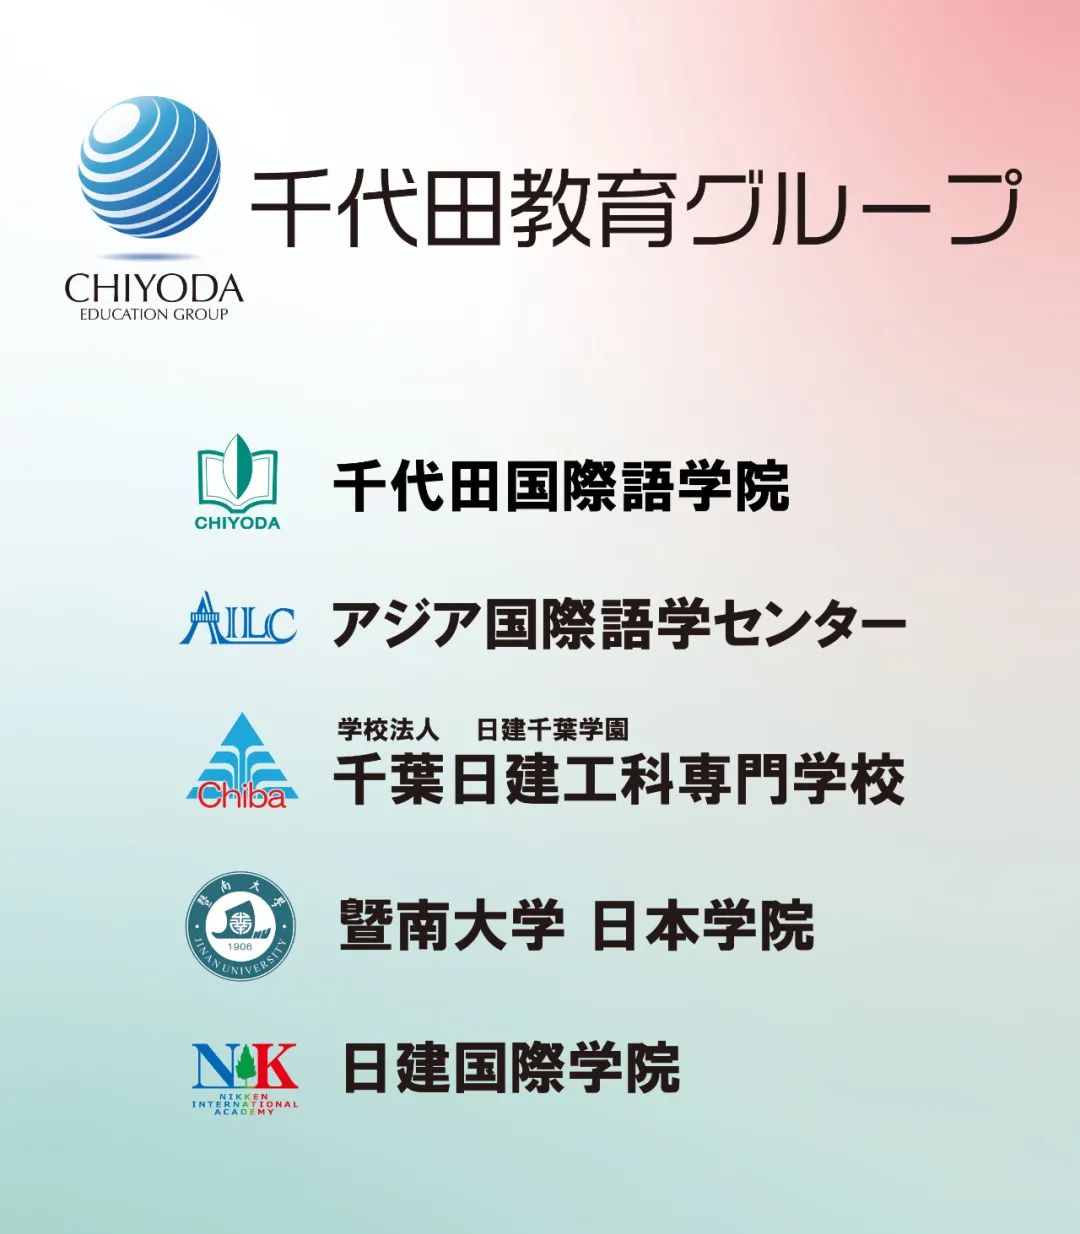 千代田新闻丨暨南大学日本学院成立大会暨开学典礼将于2021年8月28日在云端盛大举行！